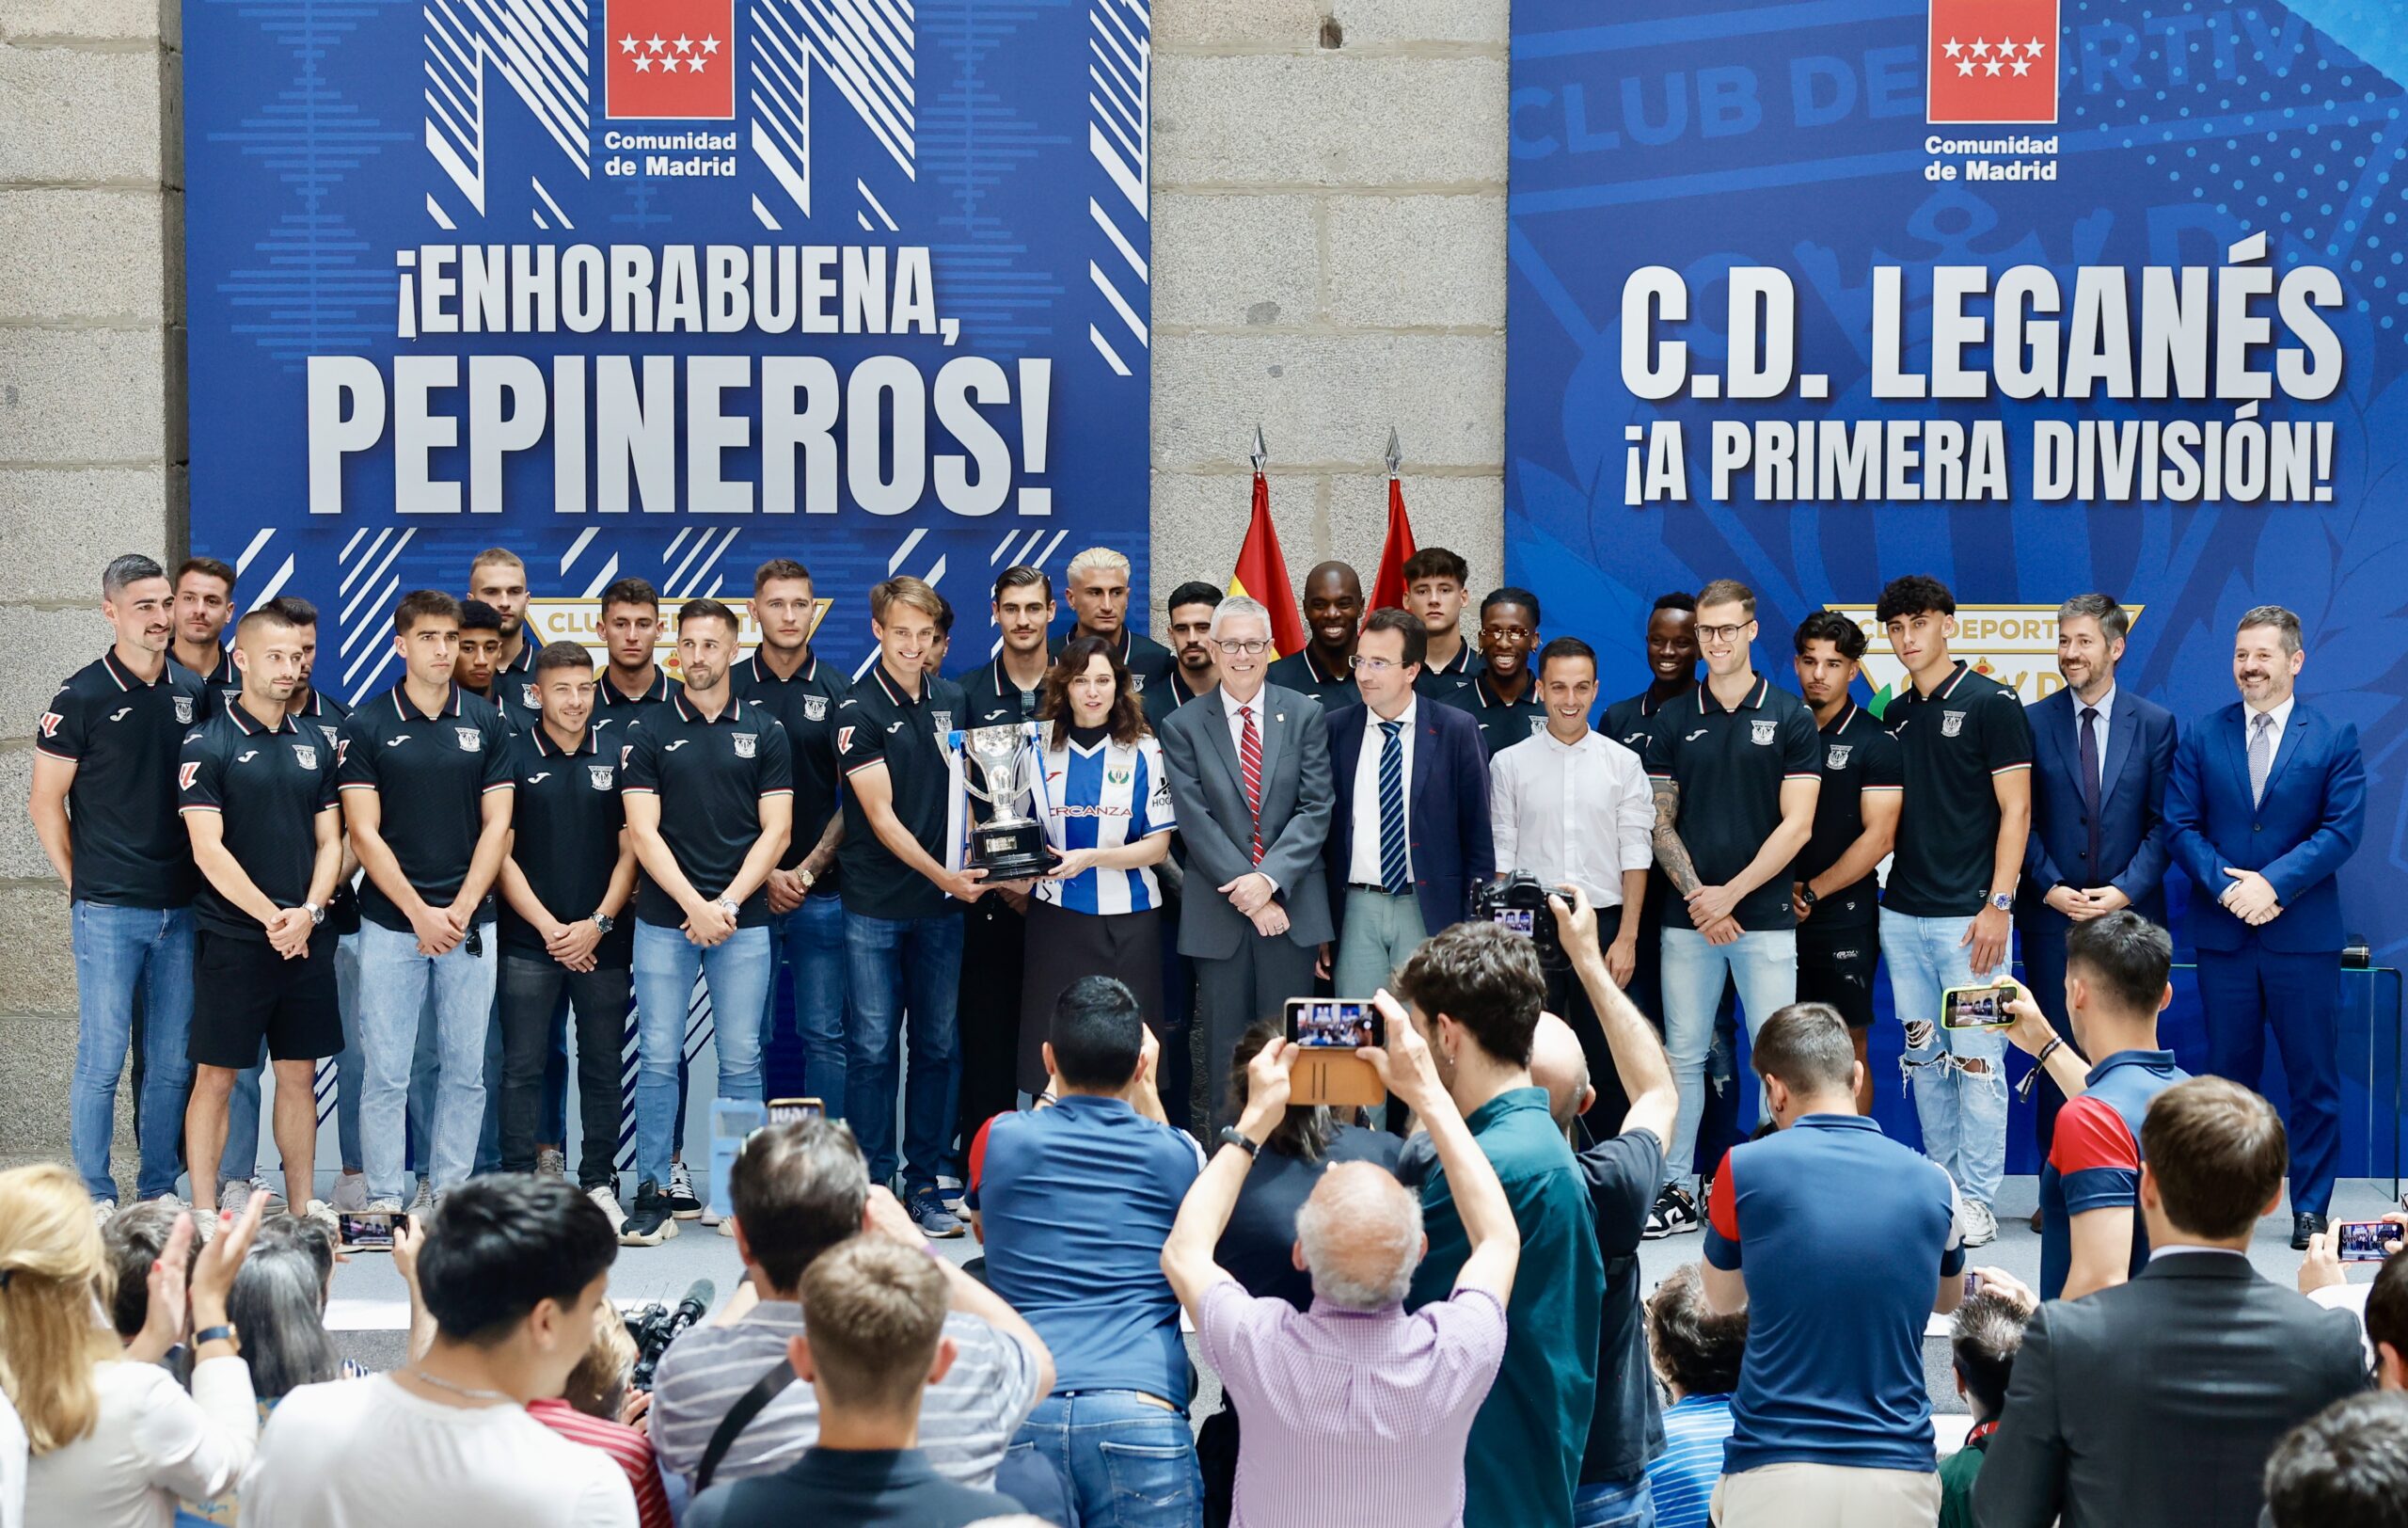 Ayuso celebra el ascenso del CD Leganés: "La Comunidad de Madrid presume de cinco equipos en Primera División"